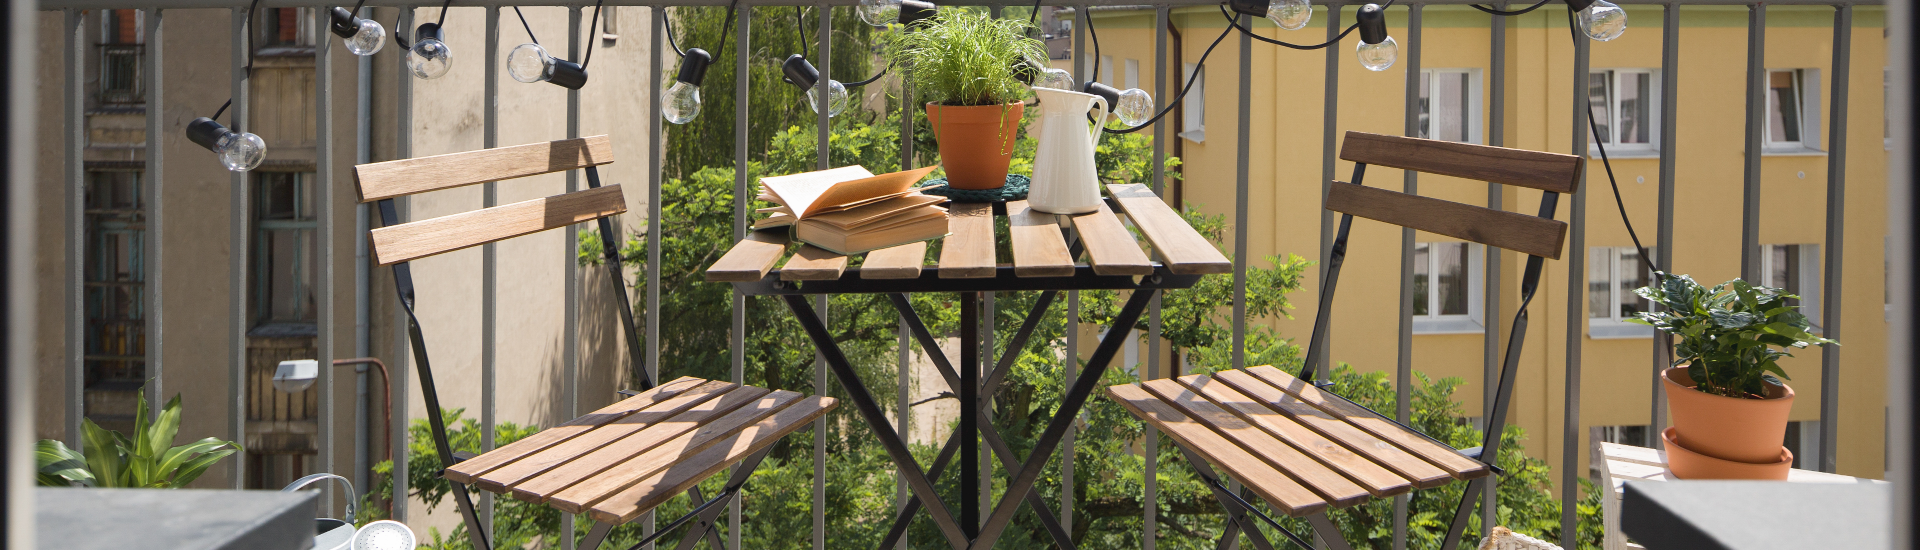 Mesas para balcón - El Blog de Muebles de Madera y Jardin .COM